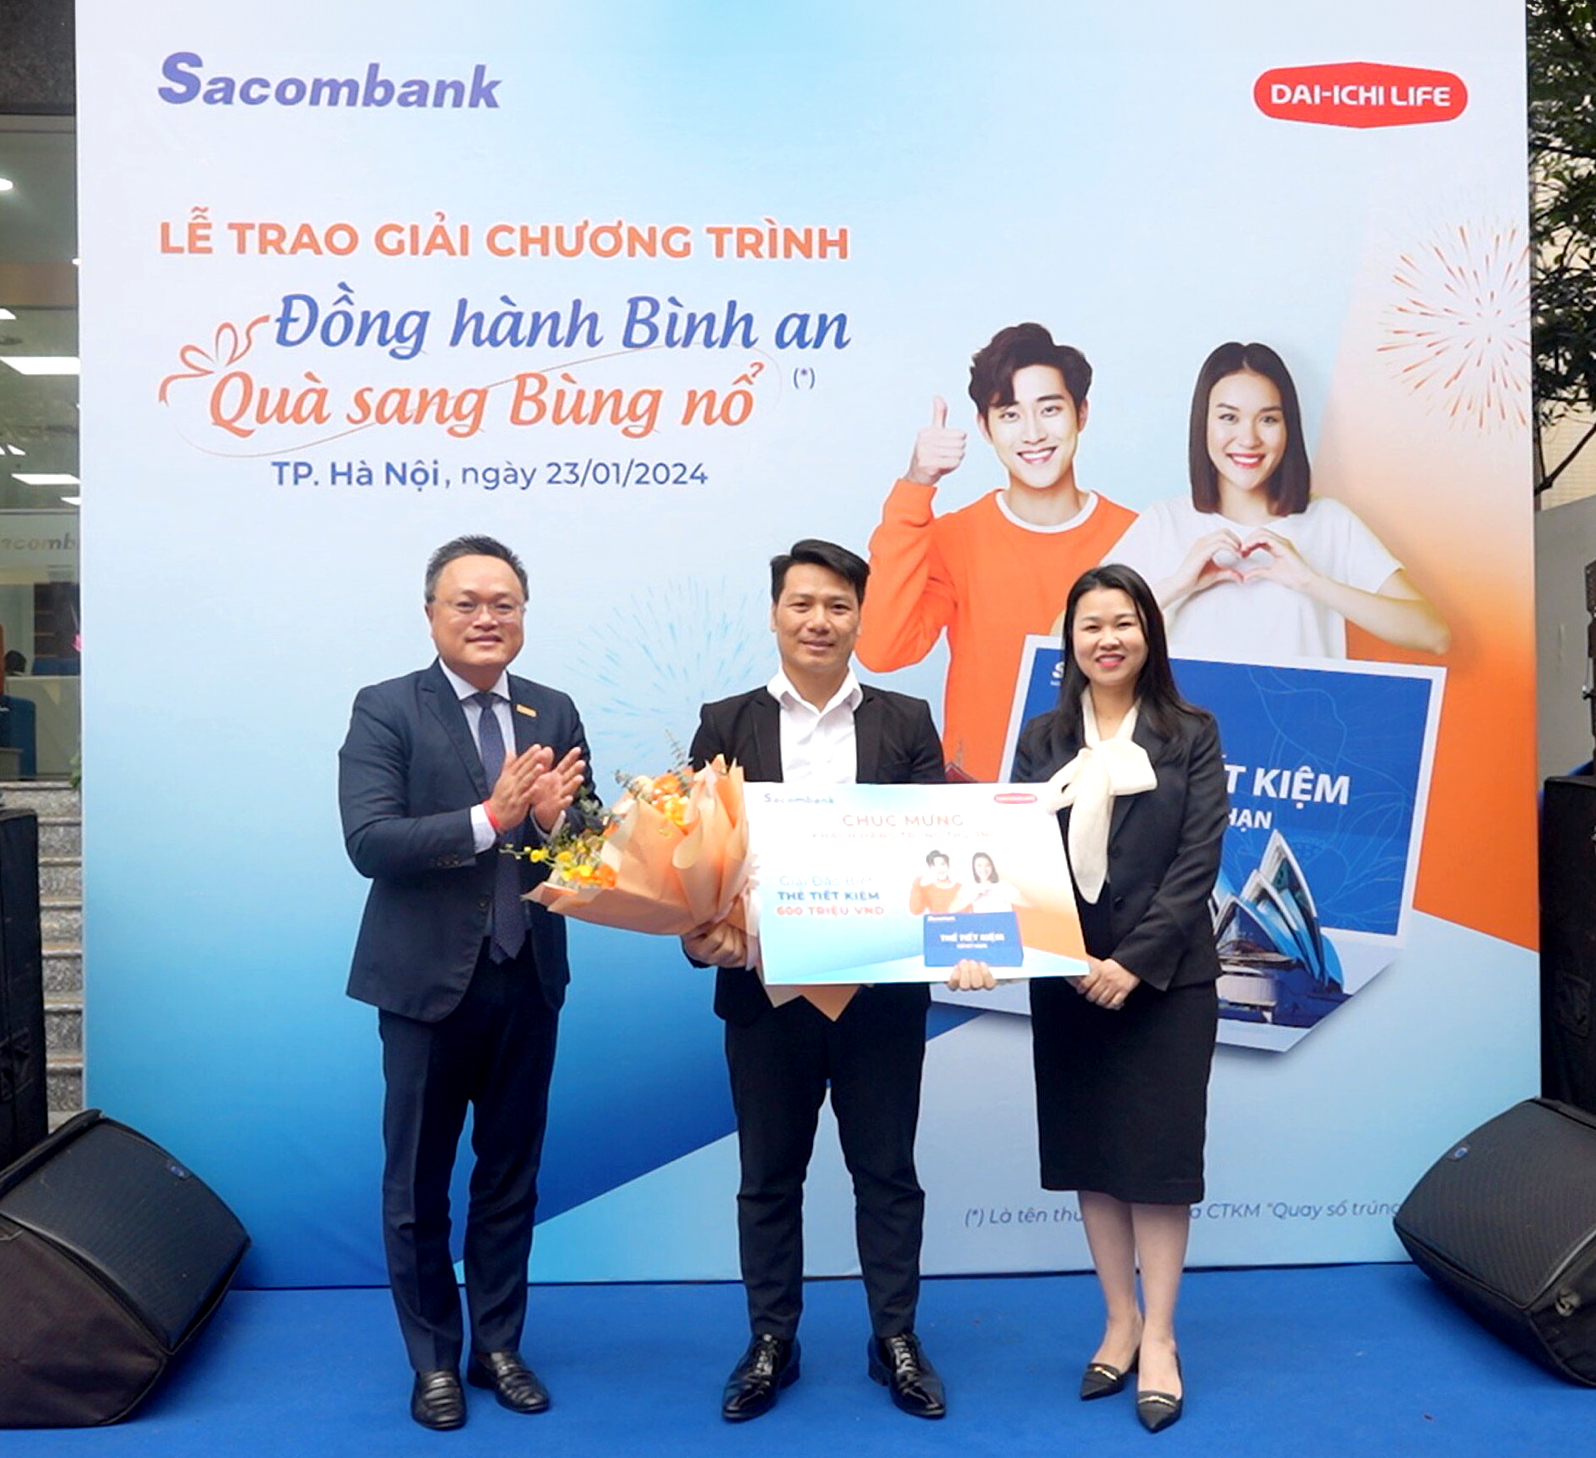 Sacombank trao giải chương trình quay số trúng thưởng "Đồng hành bình an - Quà sang bùng nổ" - Ảnh 2.